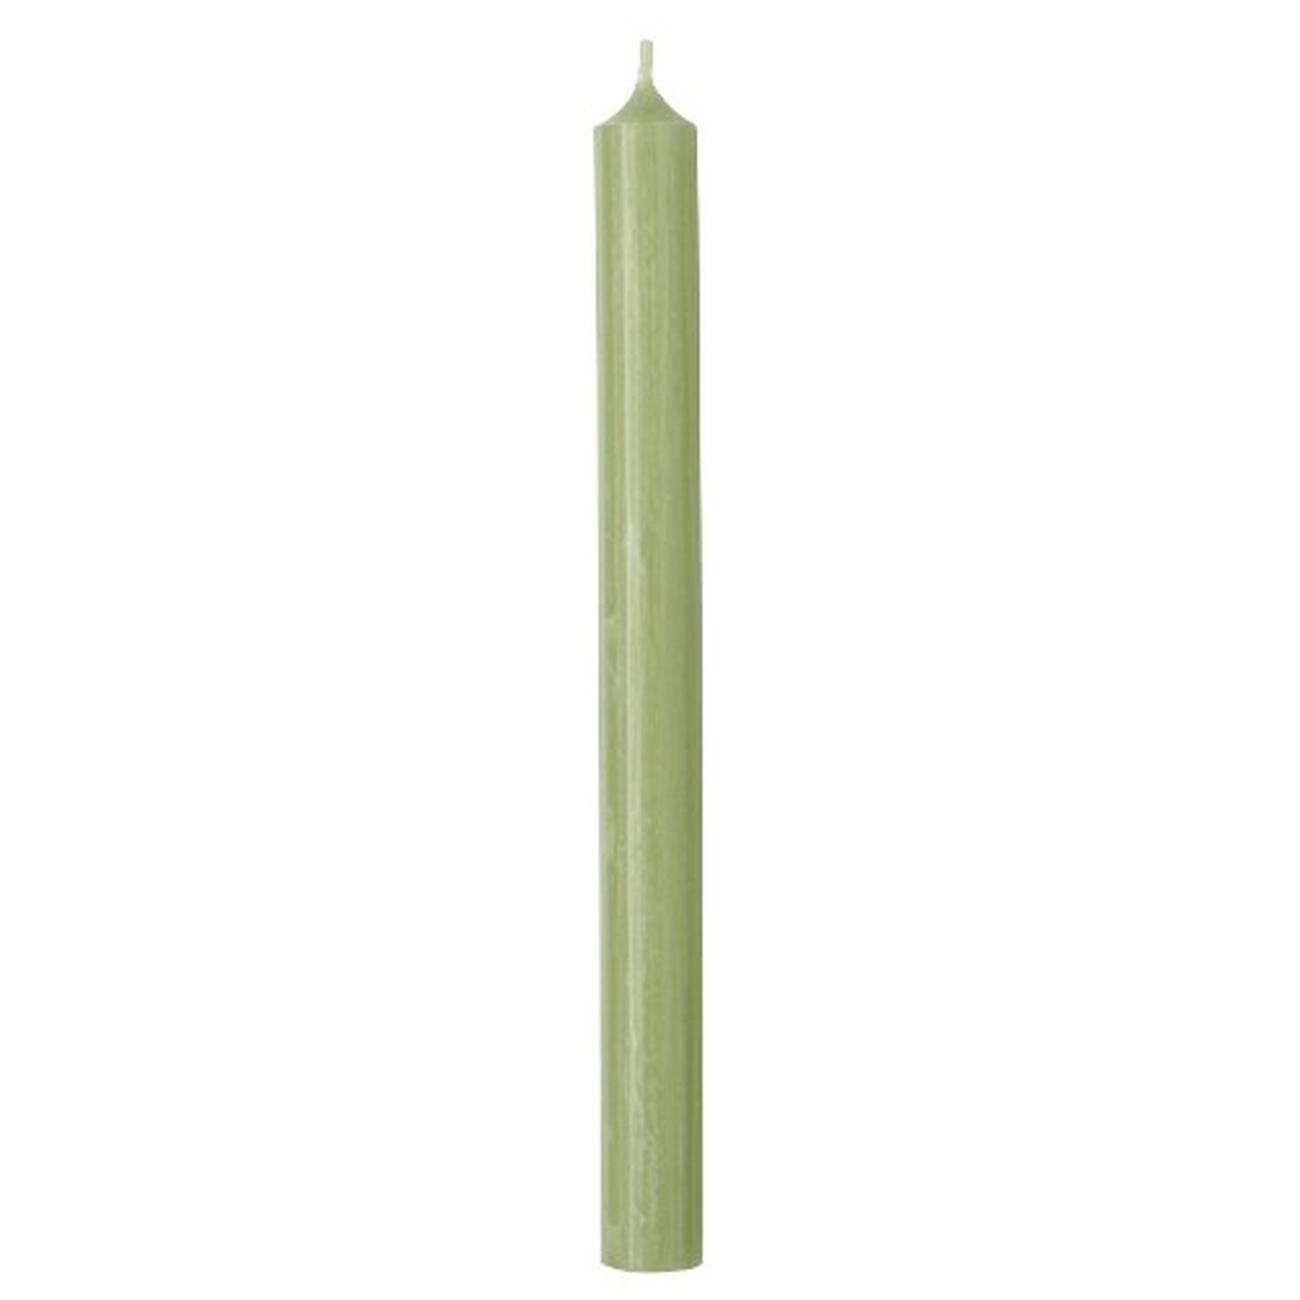 ihr-cylinder-candle-sage-green - IHR Cylinder Candle Sage